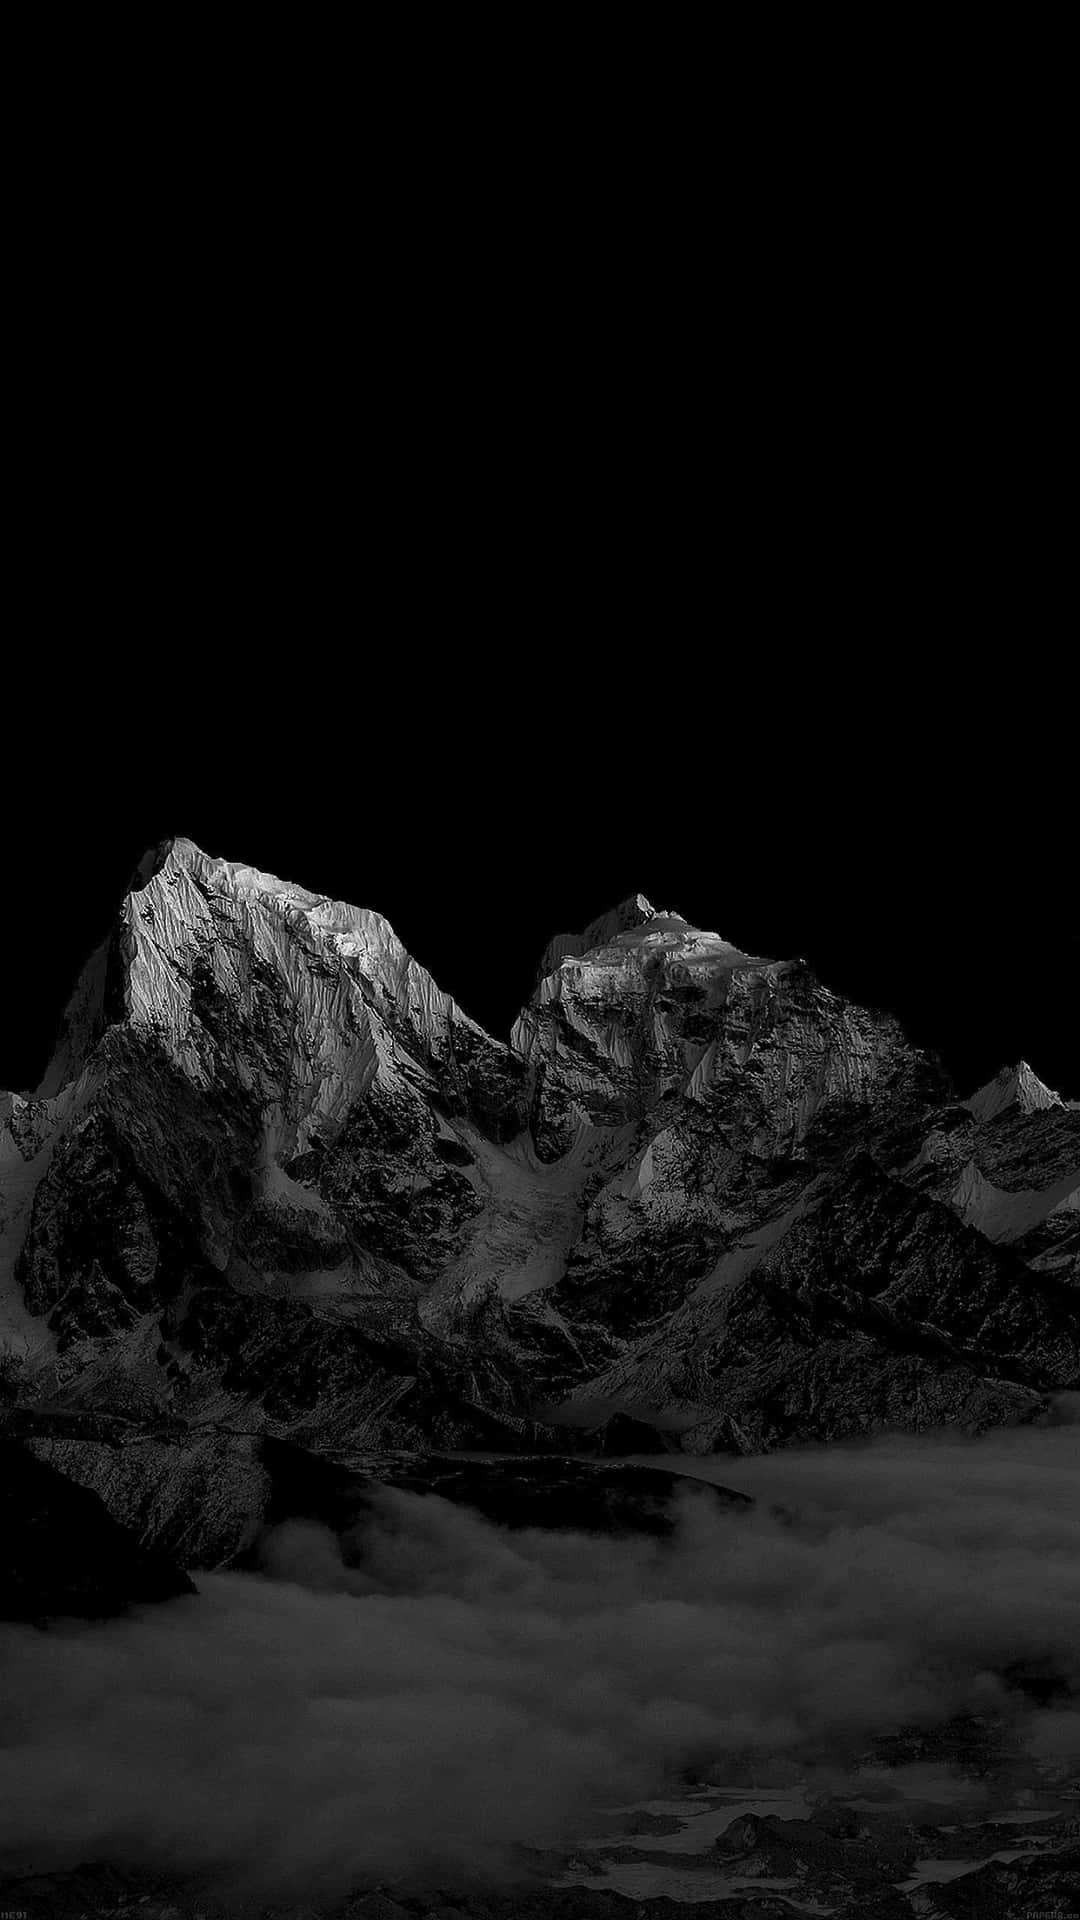 Imponentepaisaje De Noche De Montañas Oscuras. Fondo de pantalla